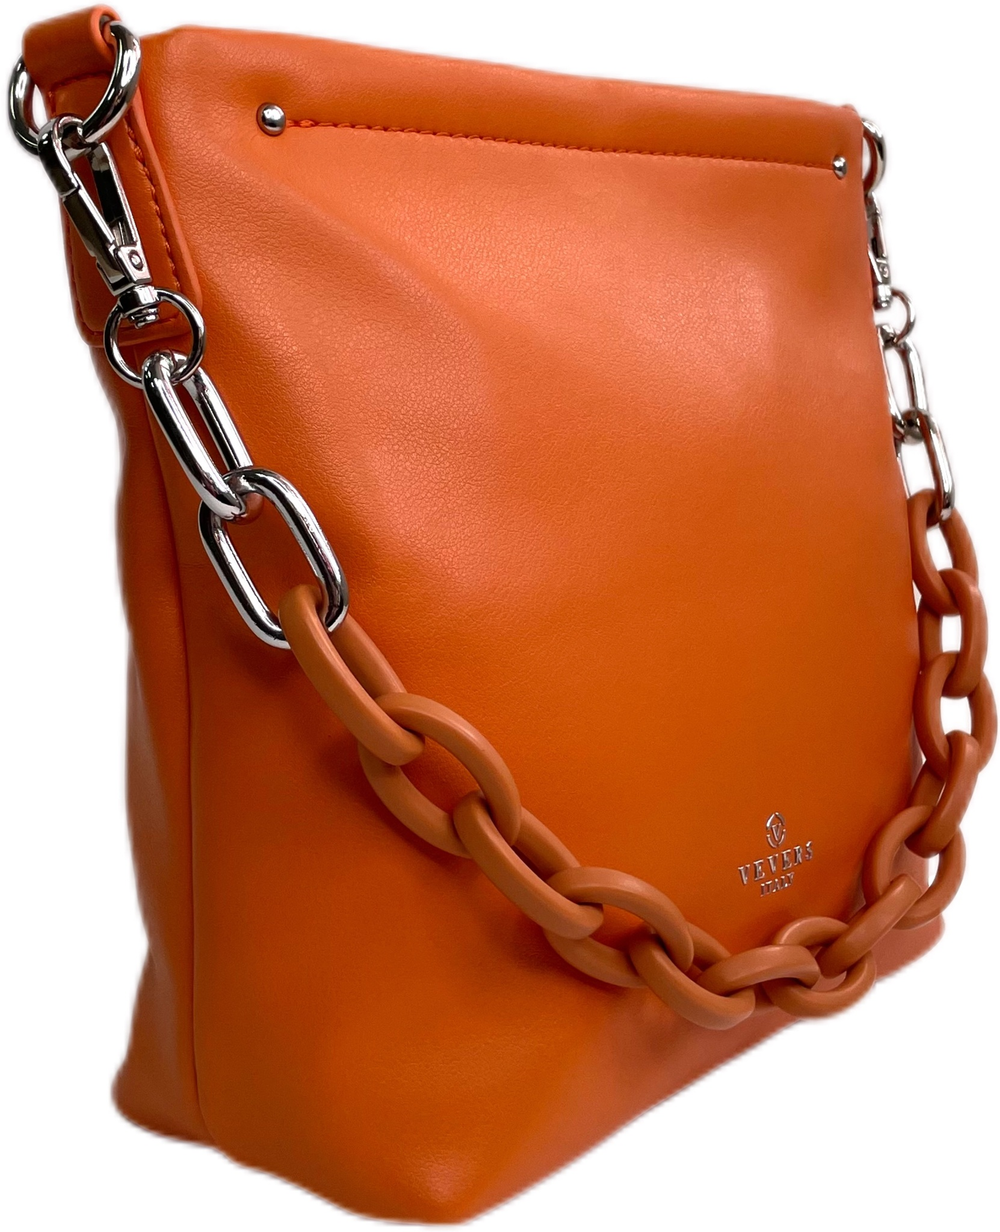 Женская сумка Vevers 2001378611469-38133-531-292 экокожа, оранжевый